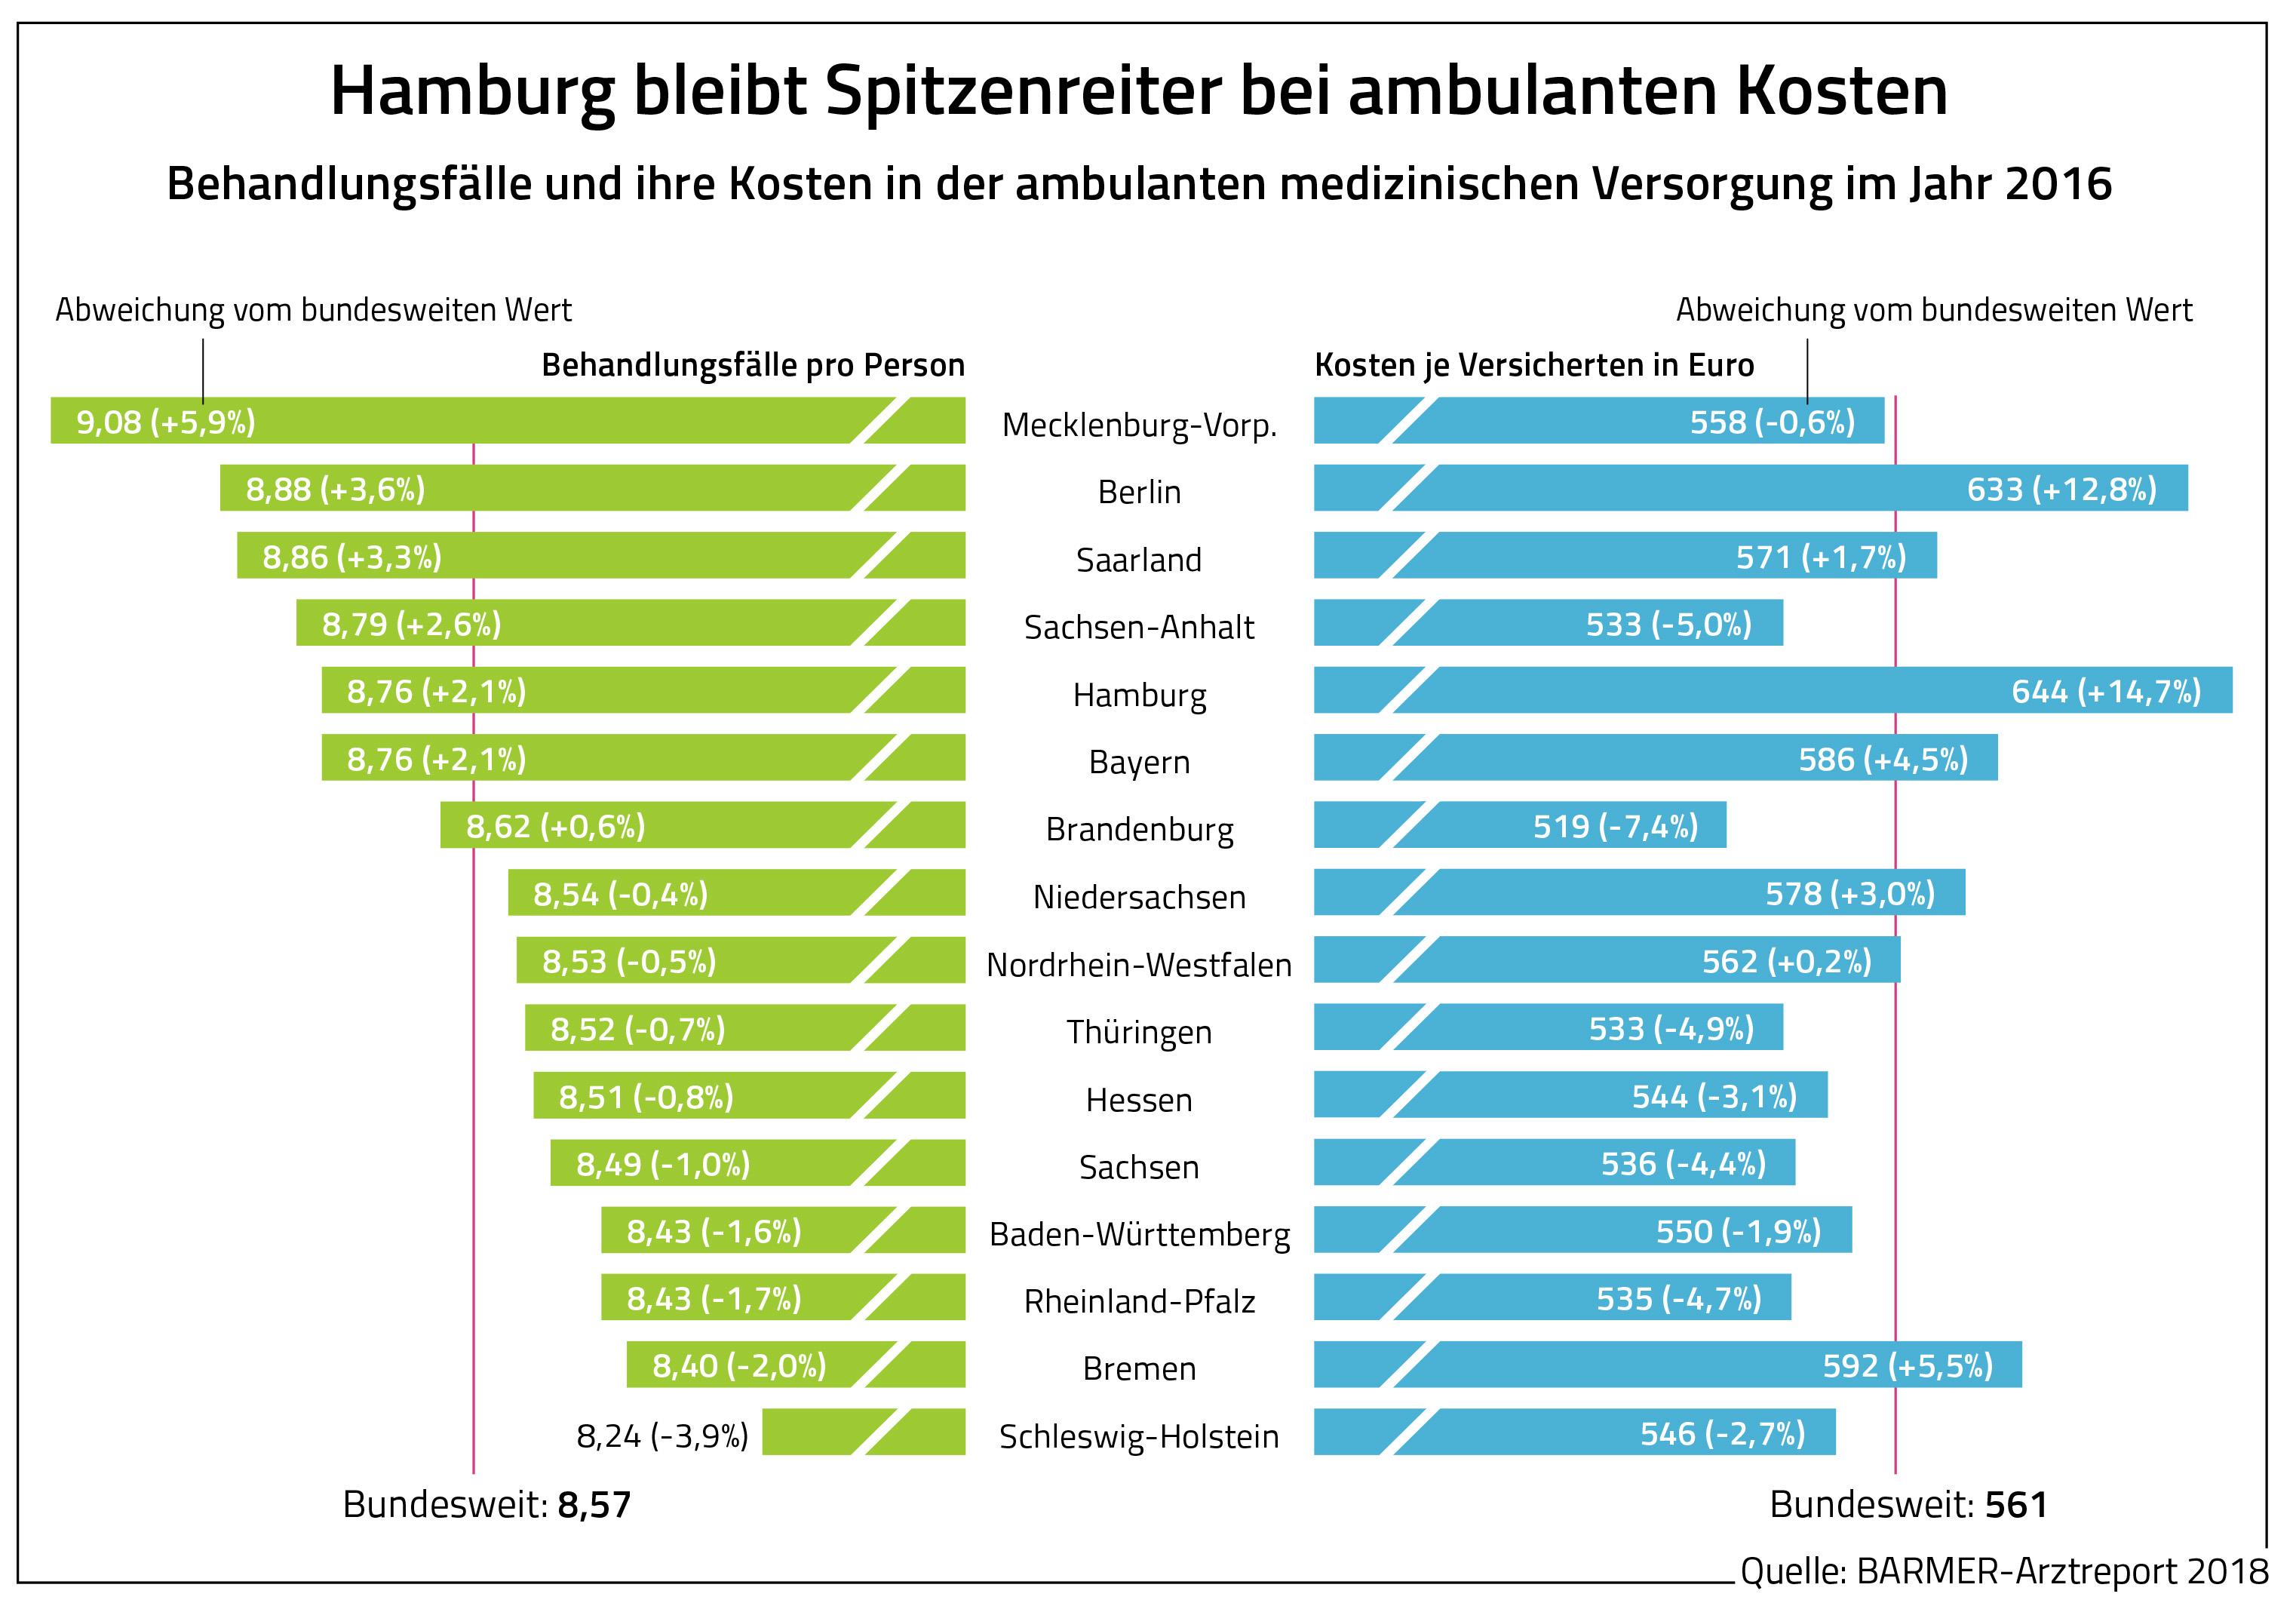 Die Grafik zeigt die Behandlungsfälle und ihre Kosten in der ambulanten medizinischen Versorgung im Jahr 2016.